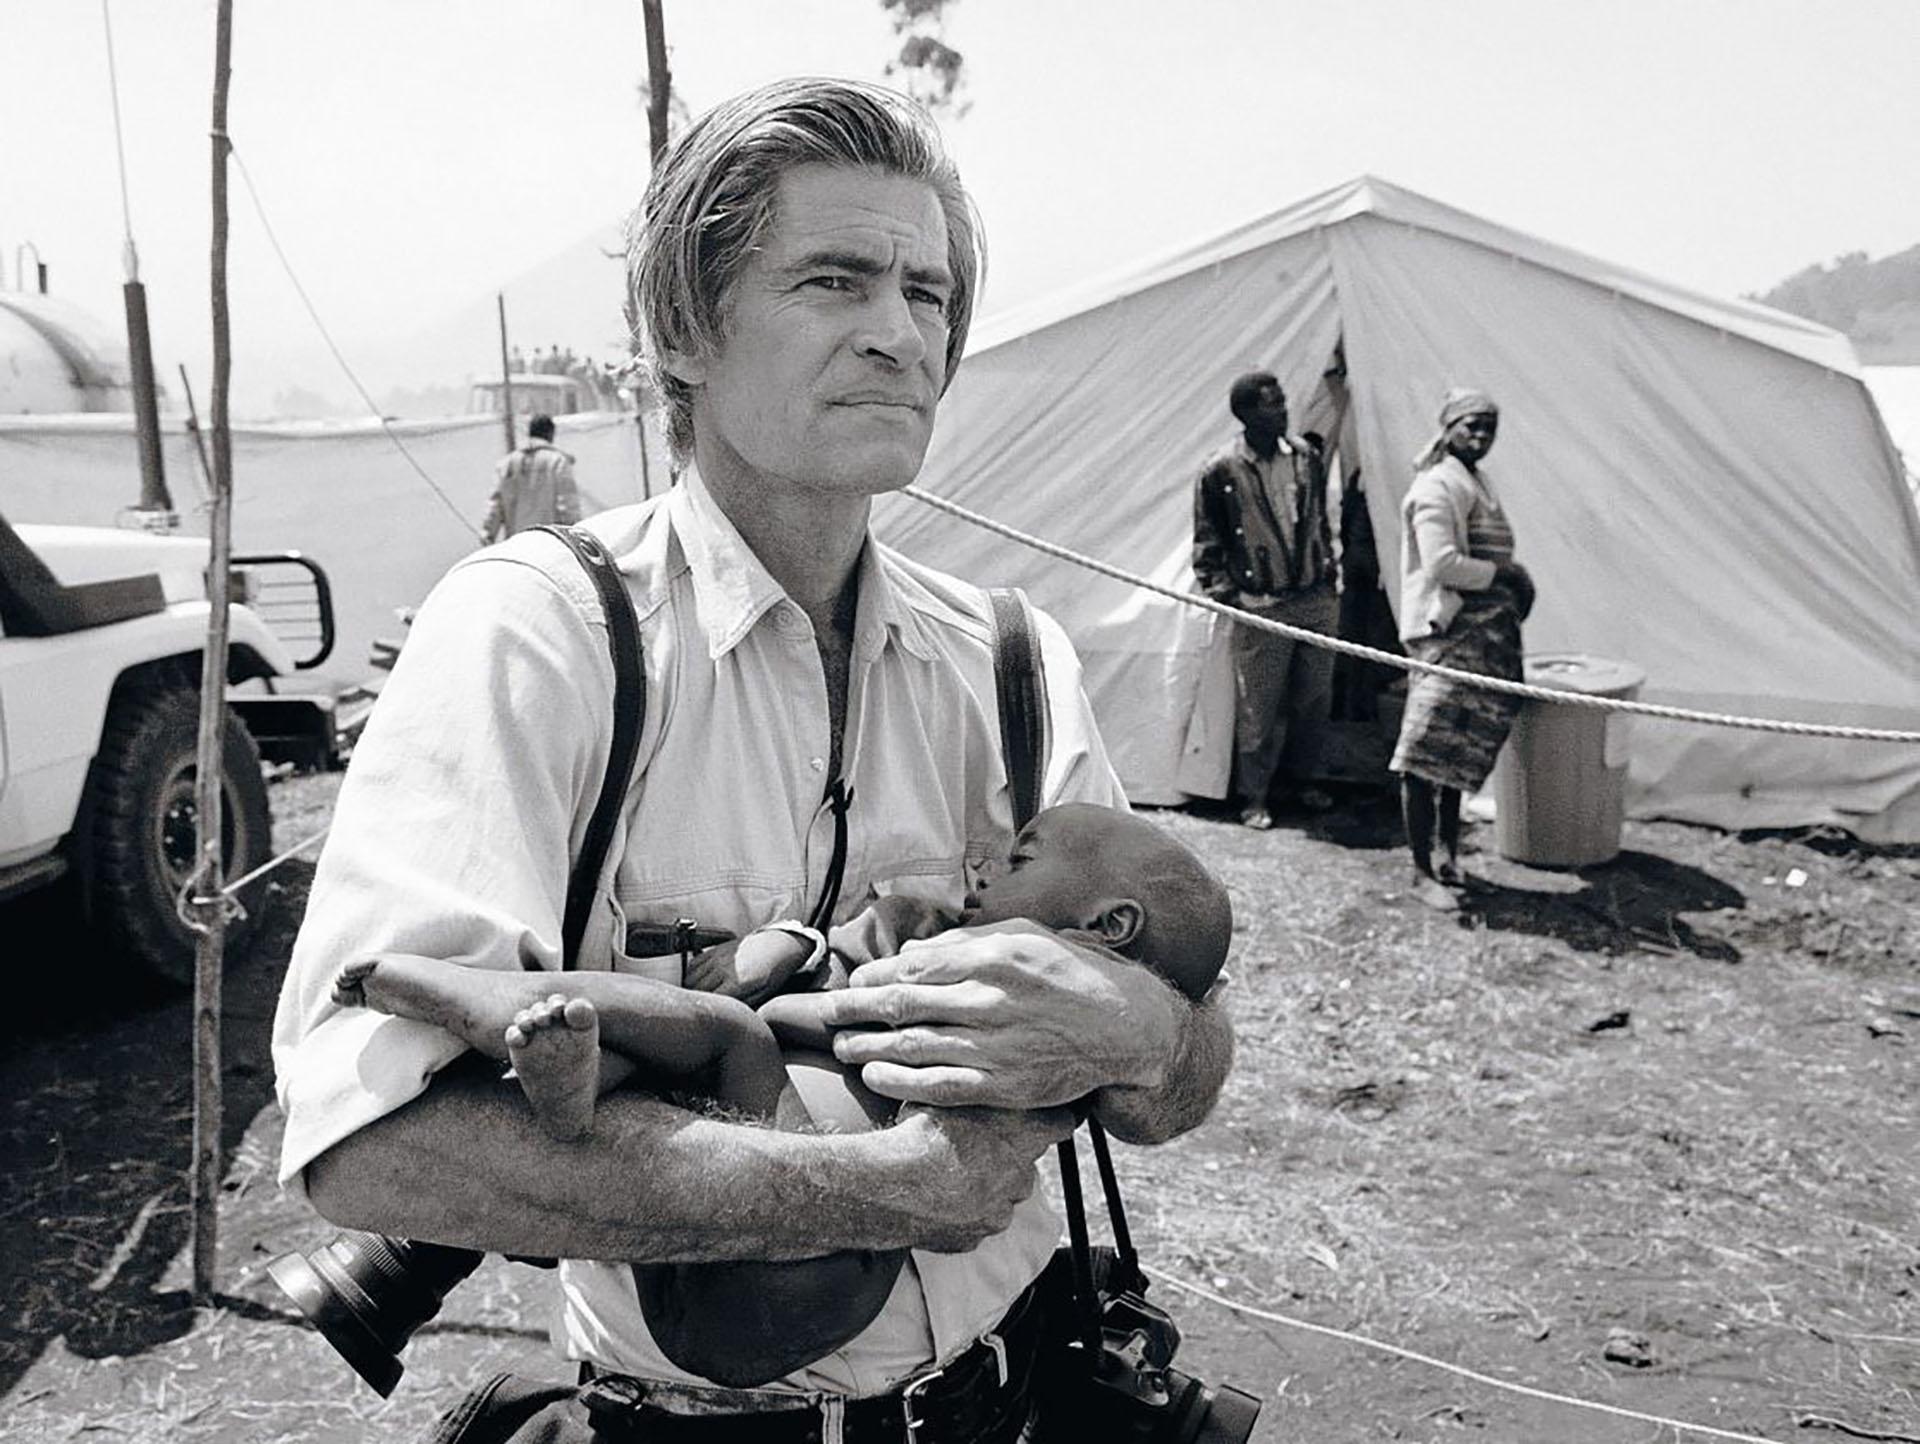 جیمز نچوی، عکاس جنگ، کودکی در کمپ جنگی را در آغوش دارد